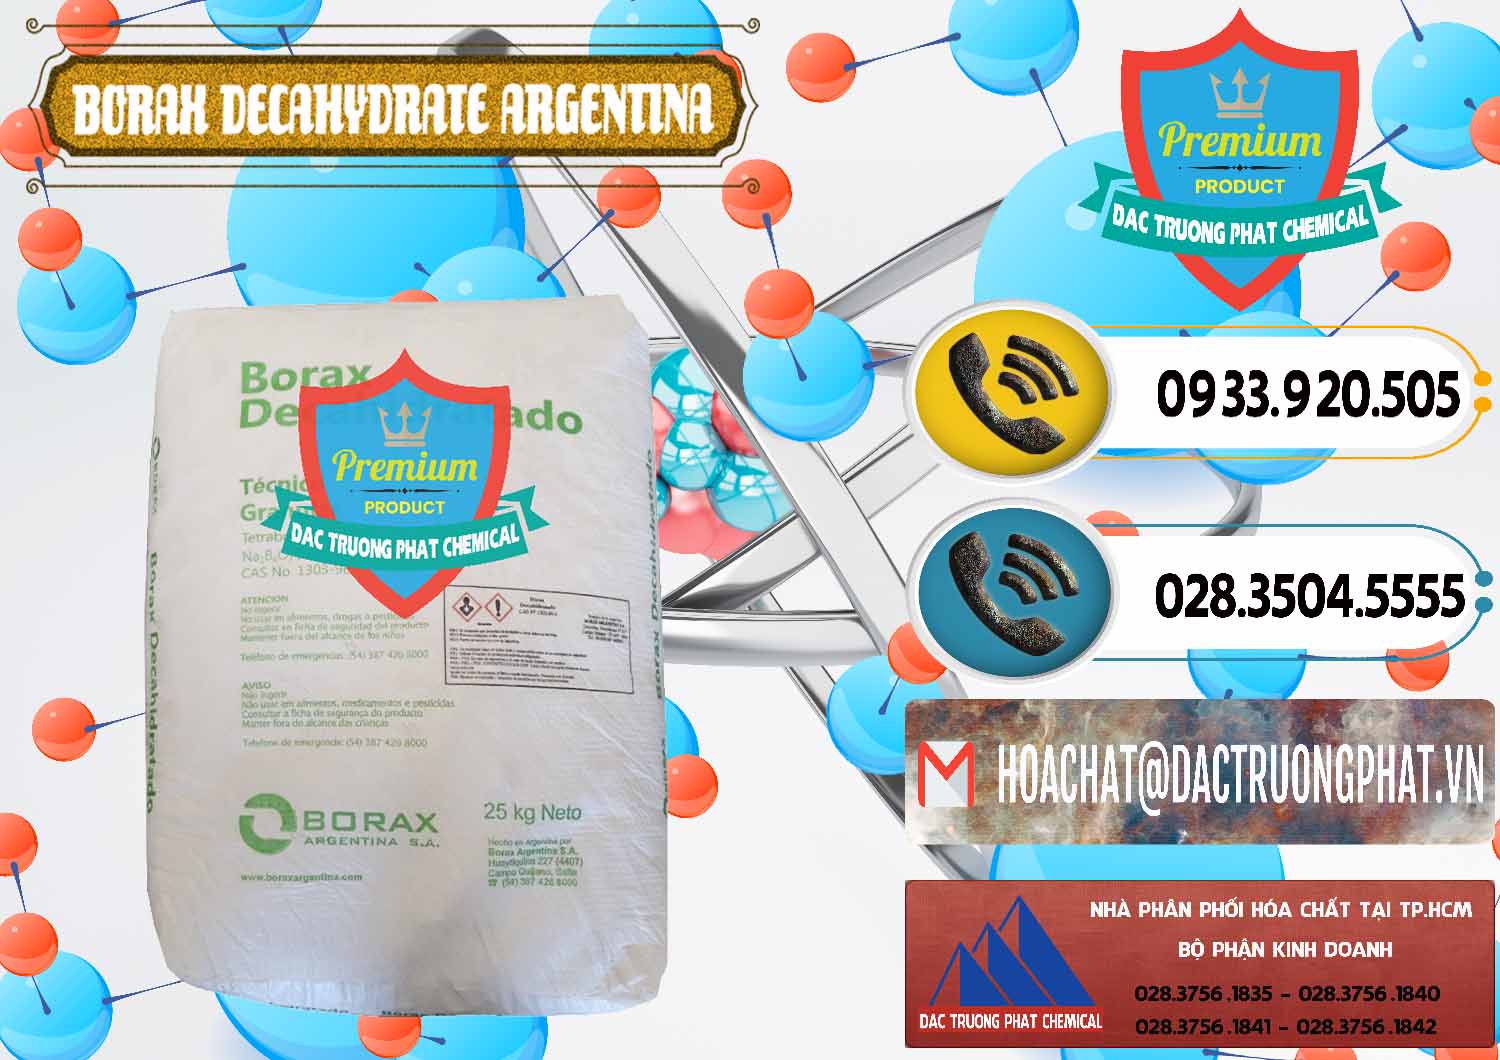 Đơn vị chuyên nhập khẩu - bán Borax Decahydrate Argentina - 0446 - Cty kinh doanh và phân phối hóa chất tại TP.HCM - hoachatdetnhuom.vn